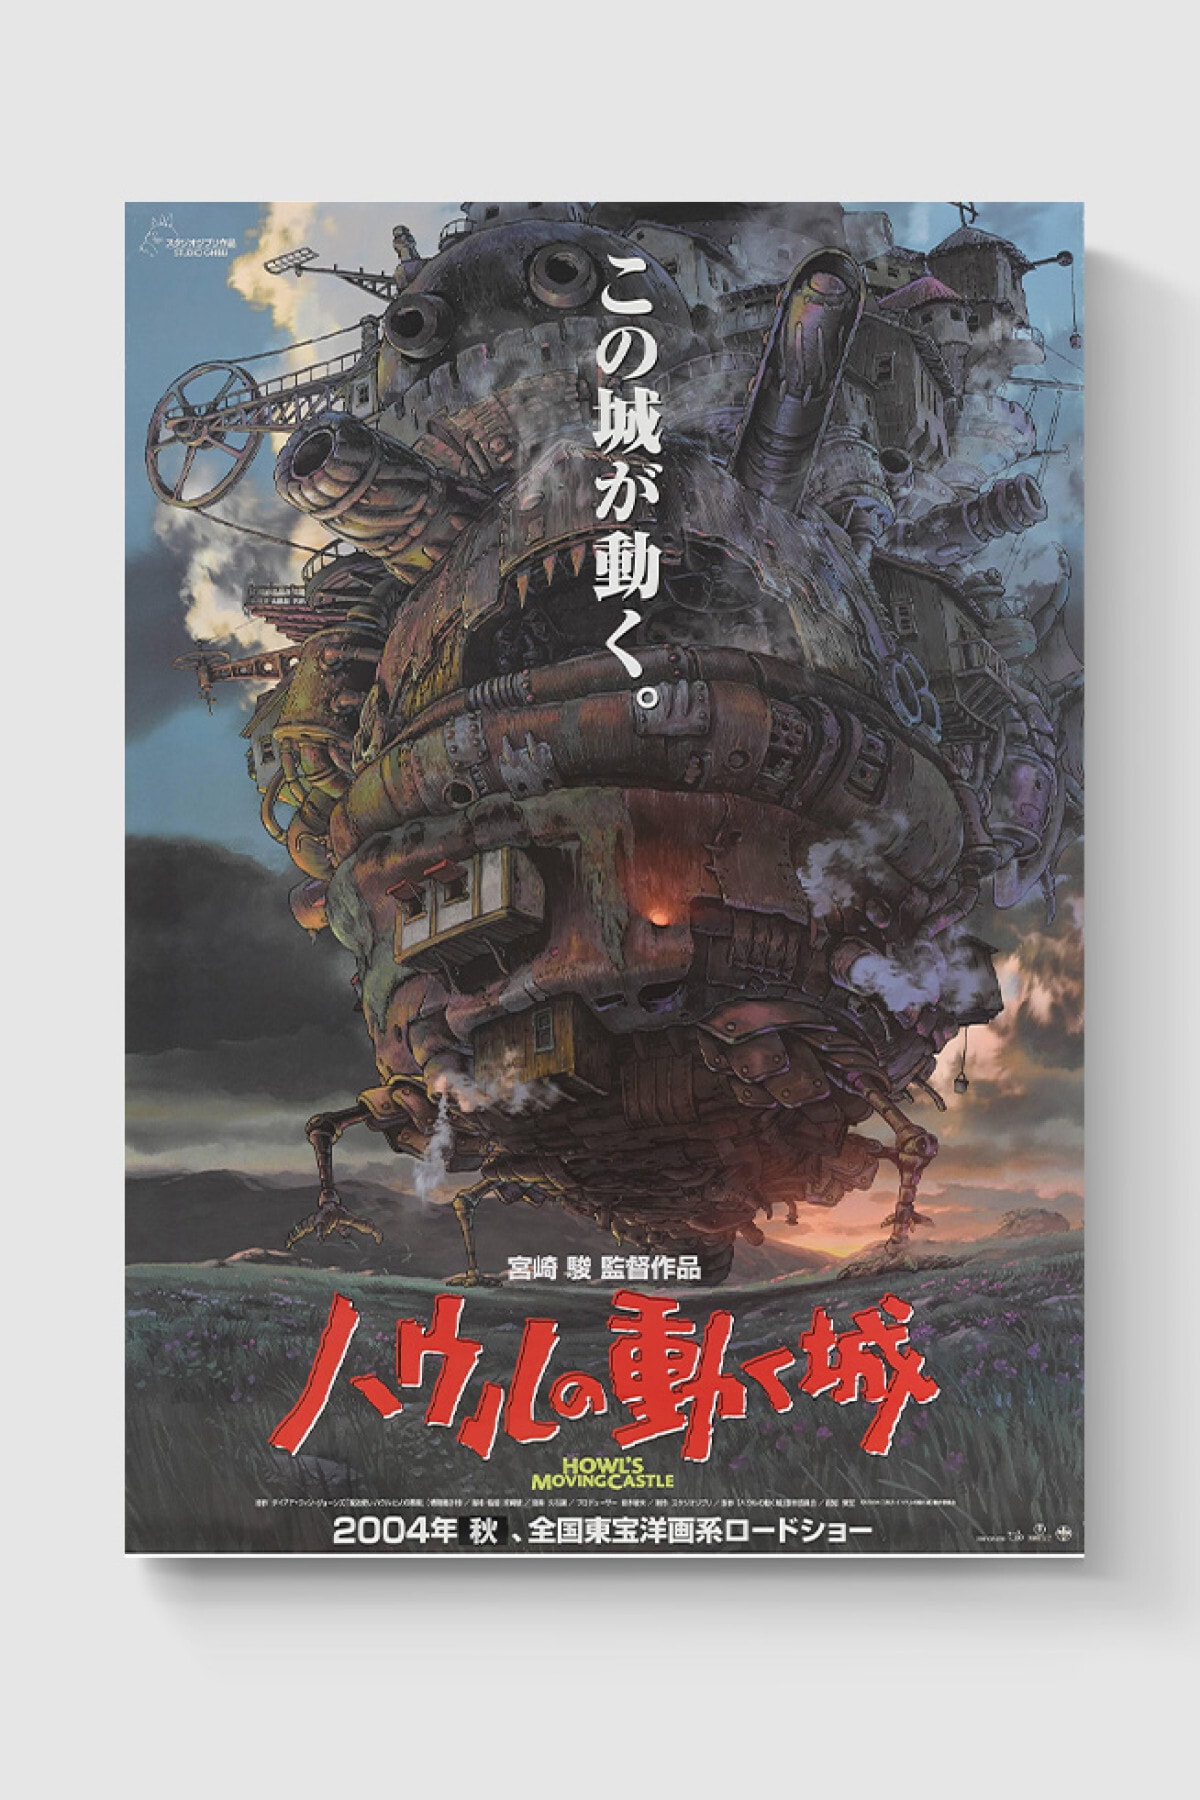 DuoArt Howl's Moving Castle Yürüyen Şato Studio Ghibli Anime Poster-yüksek Çözünürlük Hd Posteri